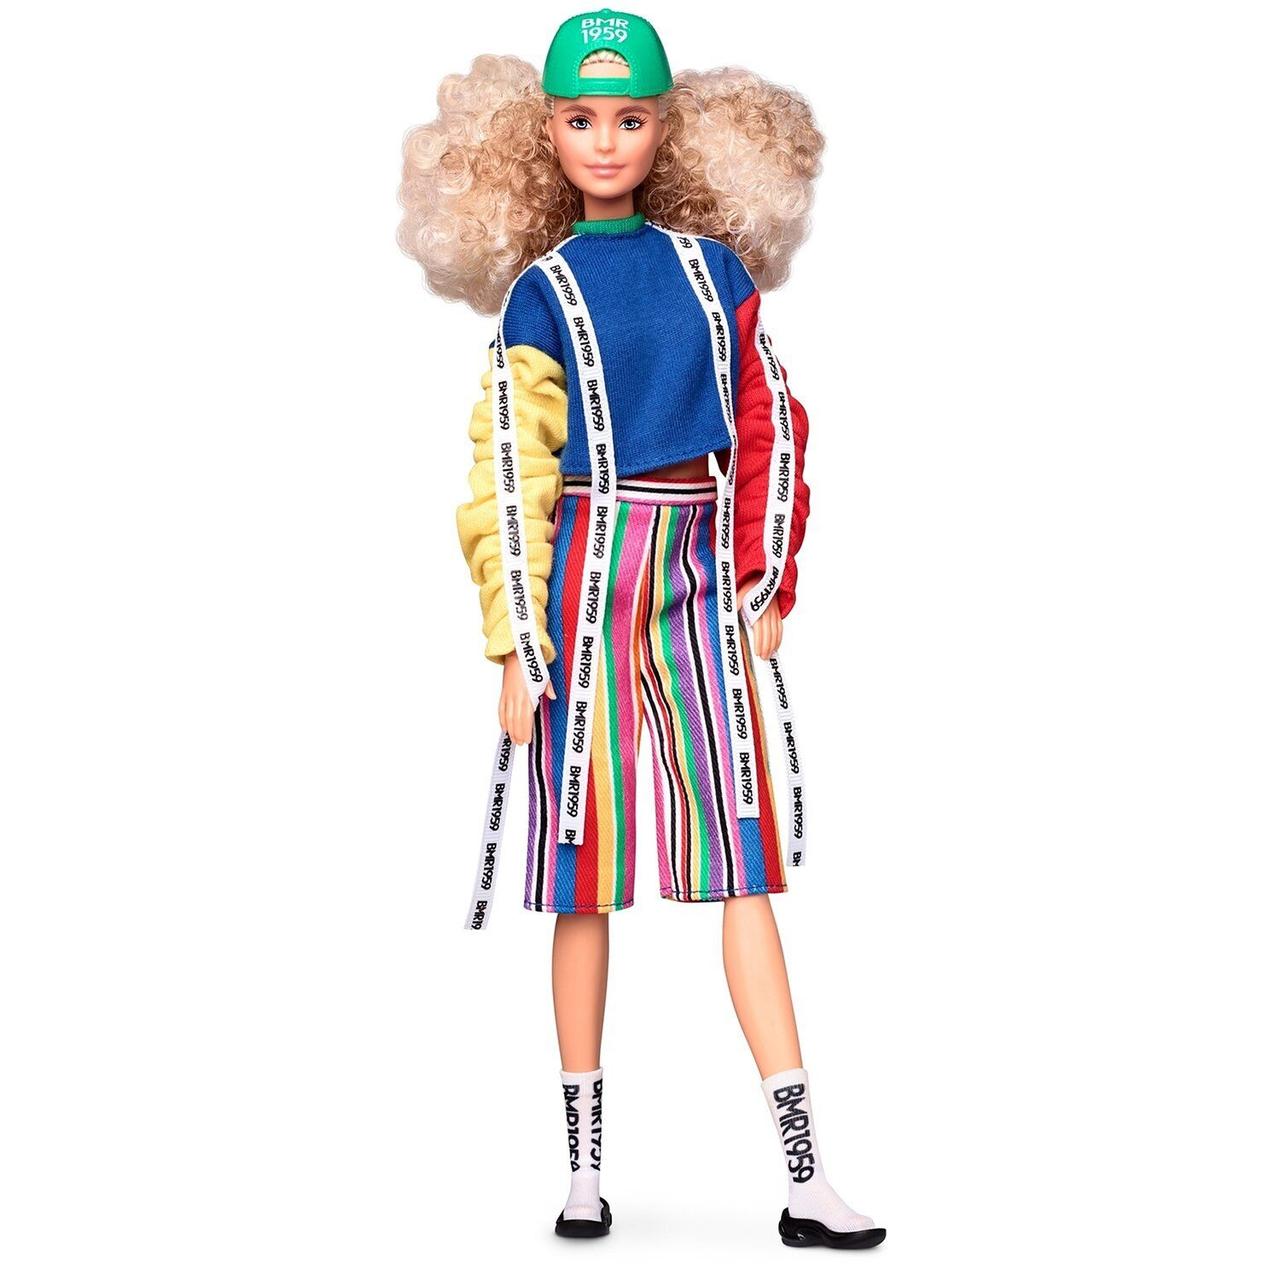 

Коллекционная кукла Барби Barbie BMR1959 кучерявая блондинка GHT92